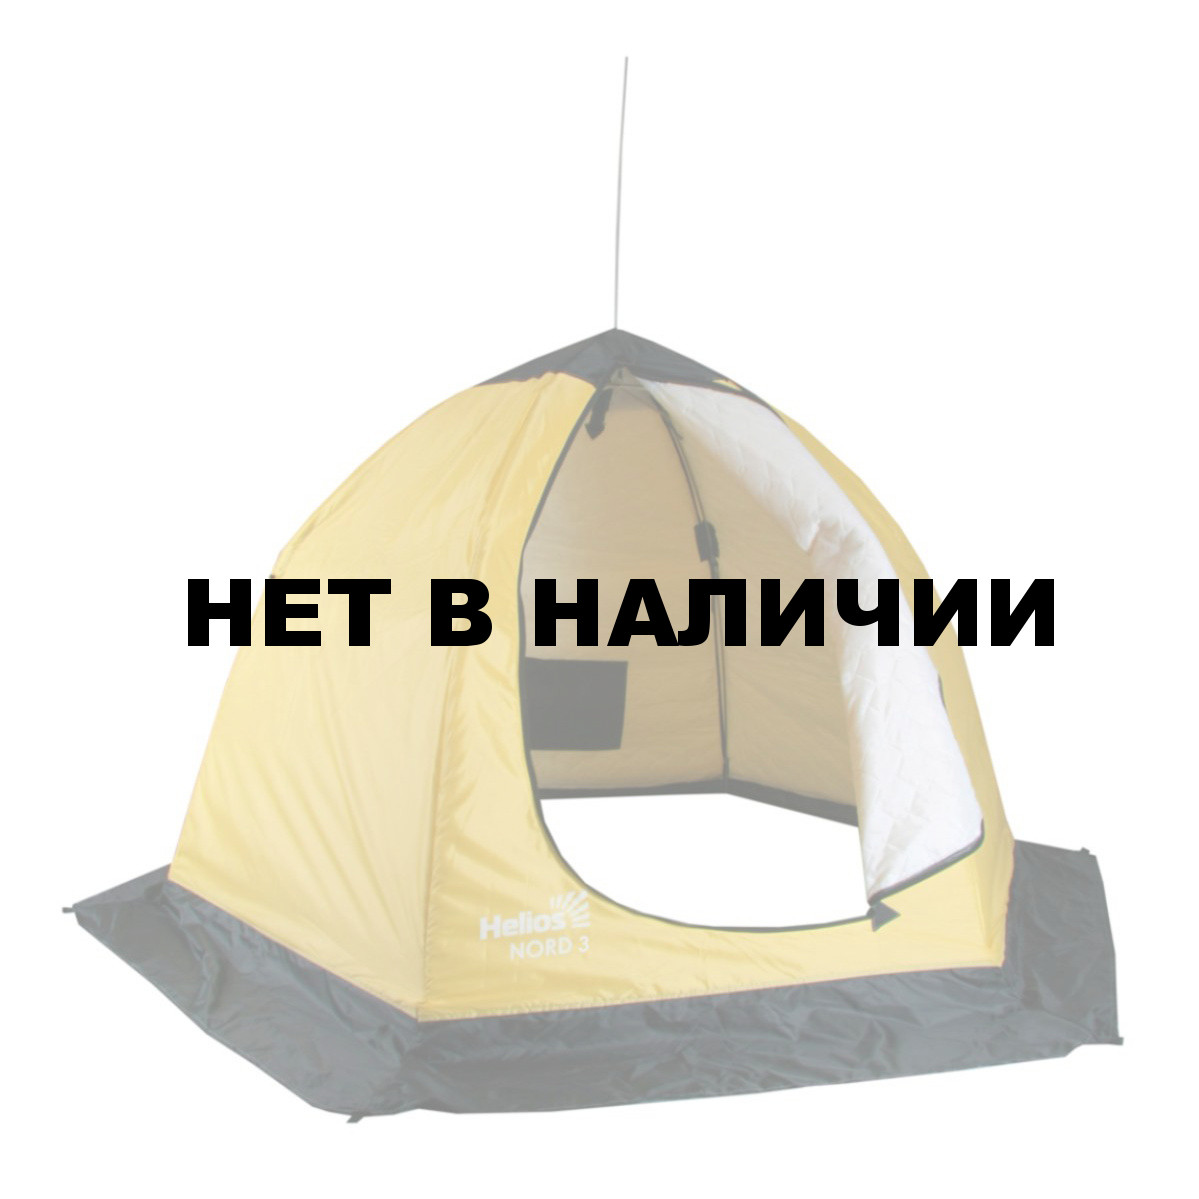 Палатка-зонт зимняя утепленная NORD-3 Helios (3-местная), производитель .